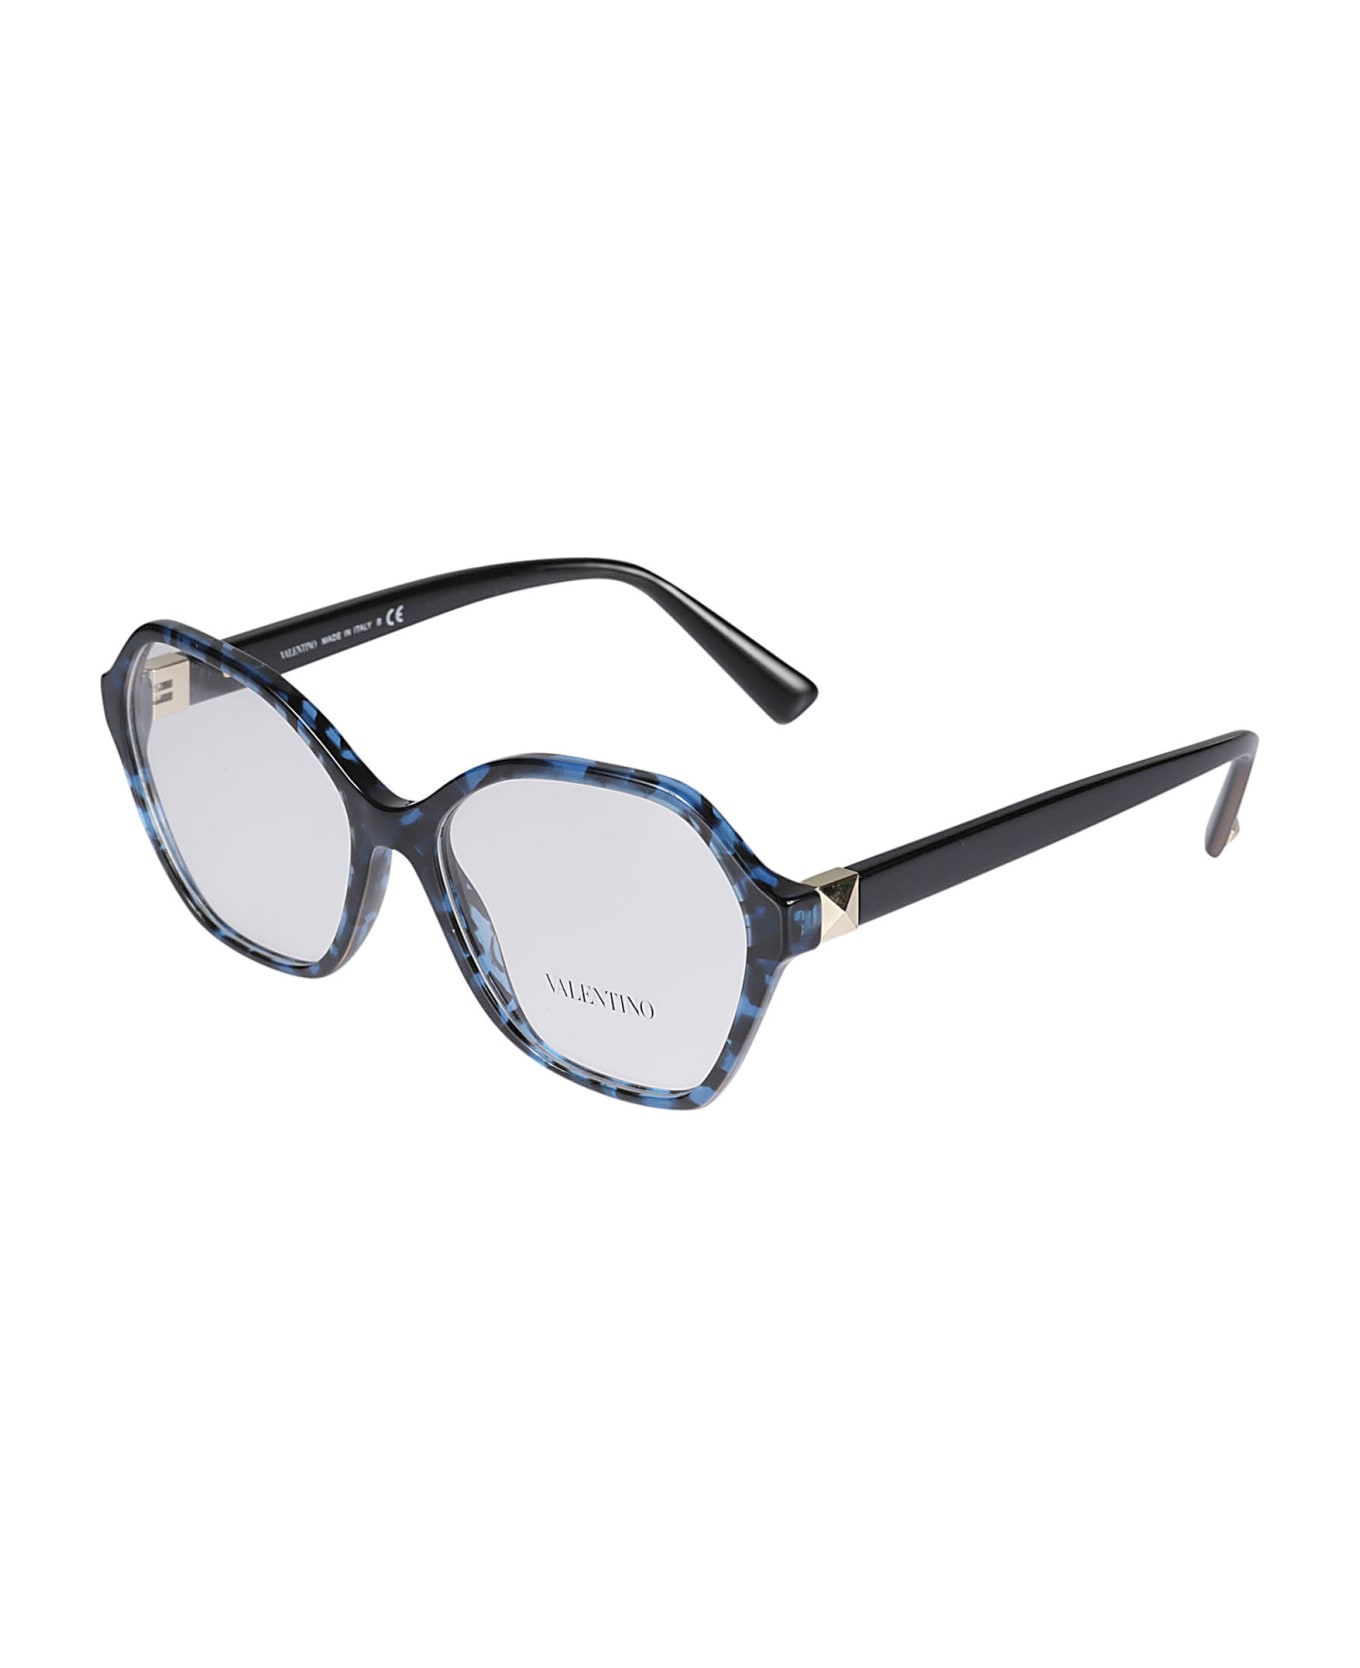 Valentino Eyewear Vista5031 Glasses - 5031